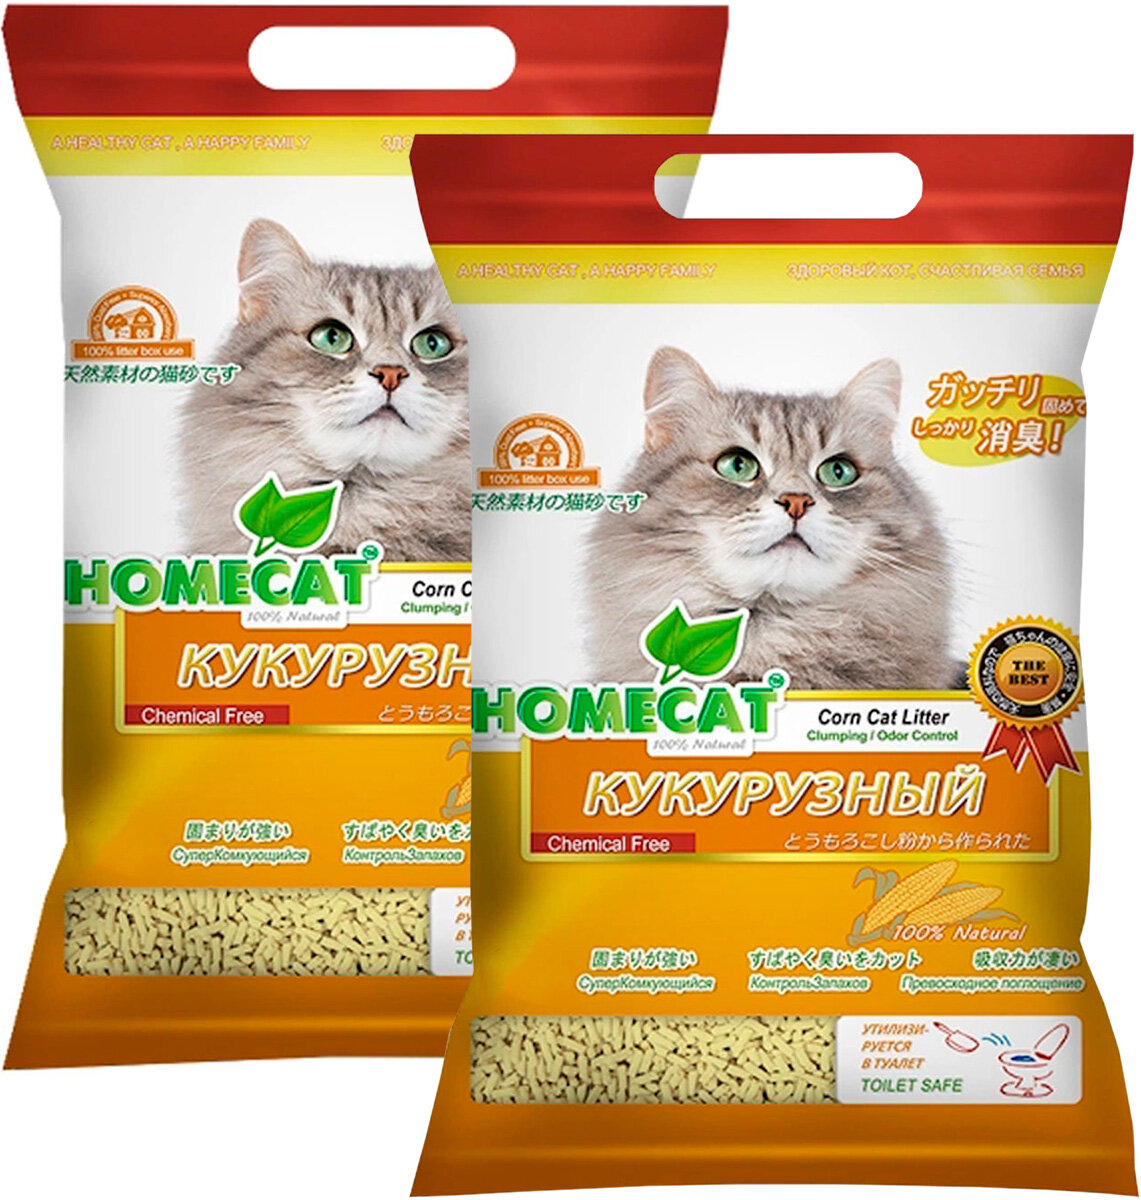 HOMECAT эколайн кукурузный наполнитель комкующийся для туалета кошек (6 + 6 л)